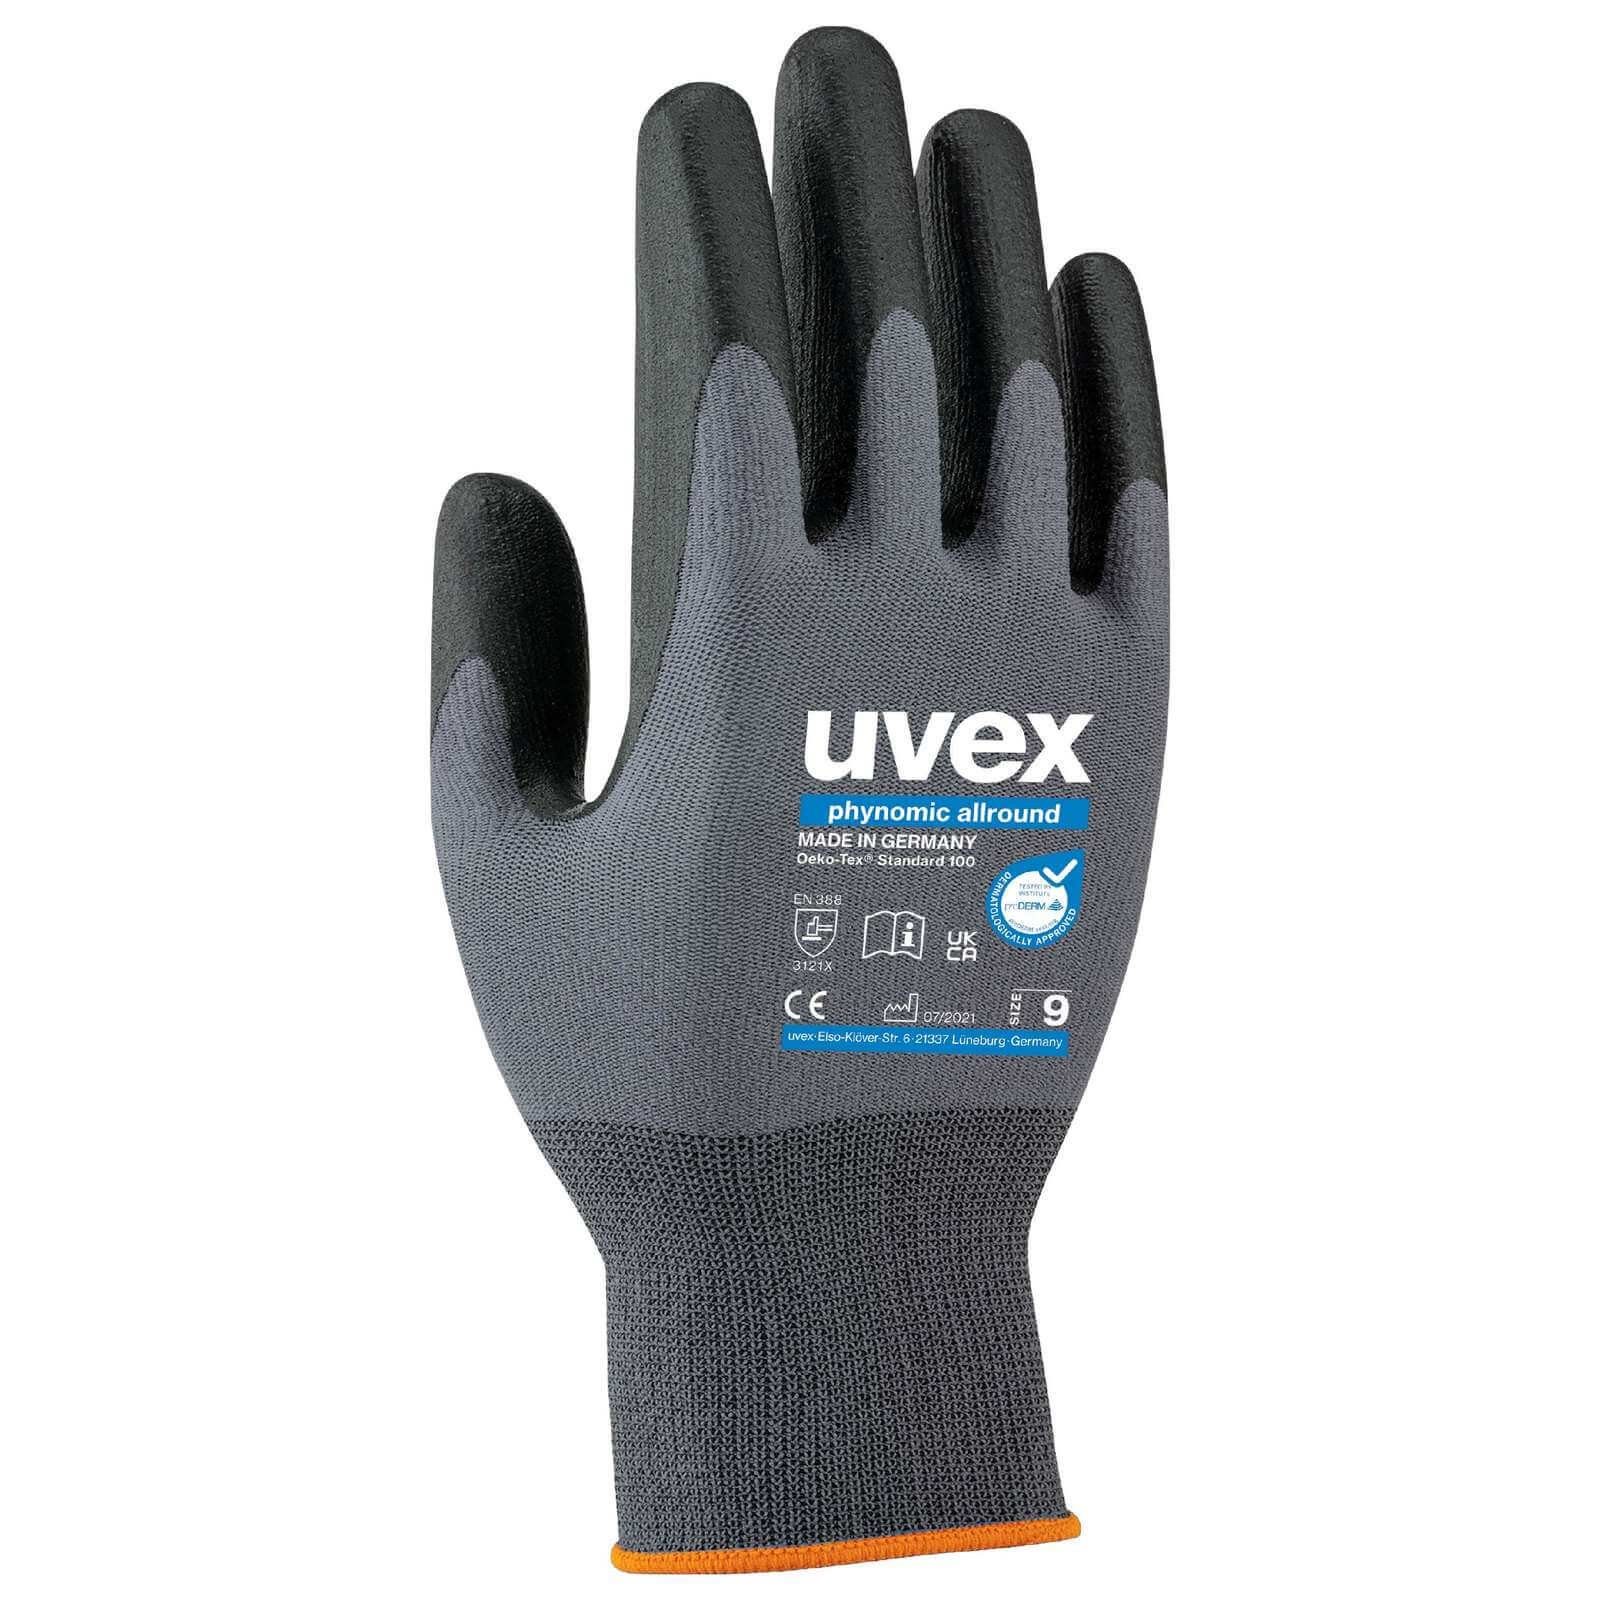 Uvex Mechaniker-Handschuhe uvex Schutzhandschuhe phynomic Allroundhandschuh allround (Spar-Set) 60049